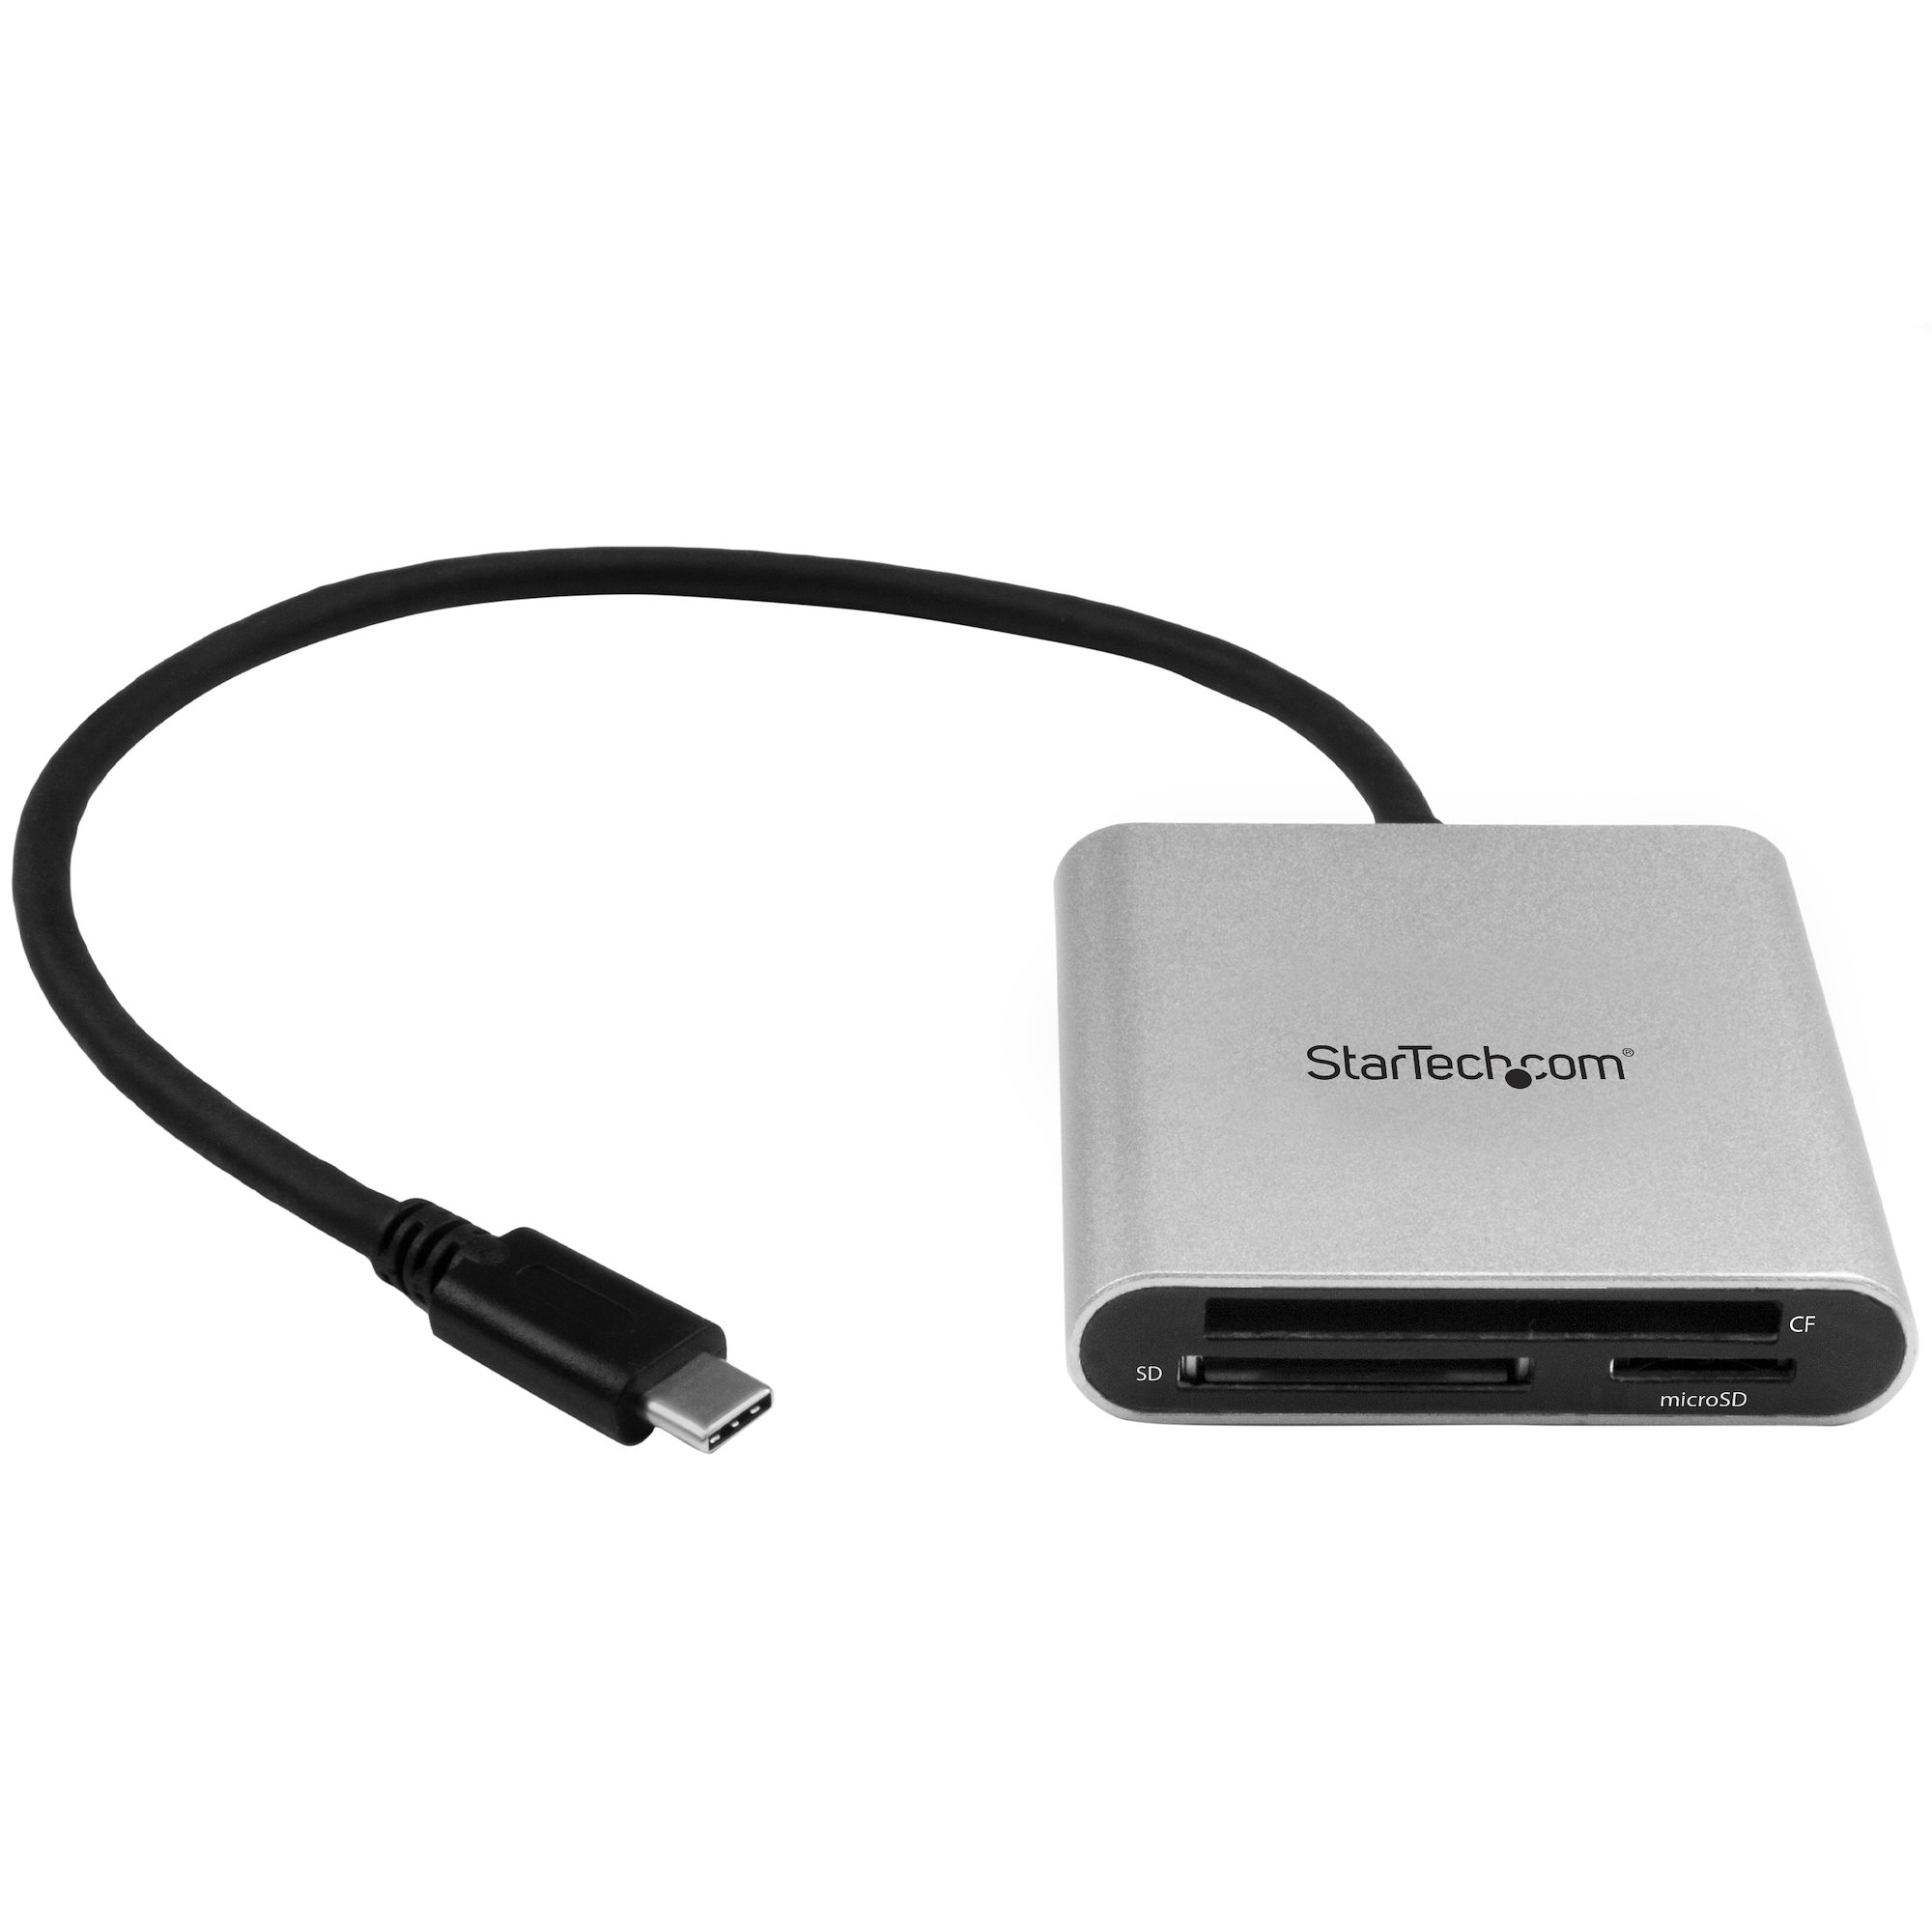 StarTech.com USB 3.0 Kartenleser mit USB-C - SD, MicroSD, CompactFlash Speicherkartenleser mit USB-C Kabel - Kartenleser (CF I, CF II, MMC, SD, microSD, SDHC, microSDHC, SDXC, microSDXC)